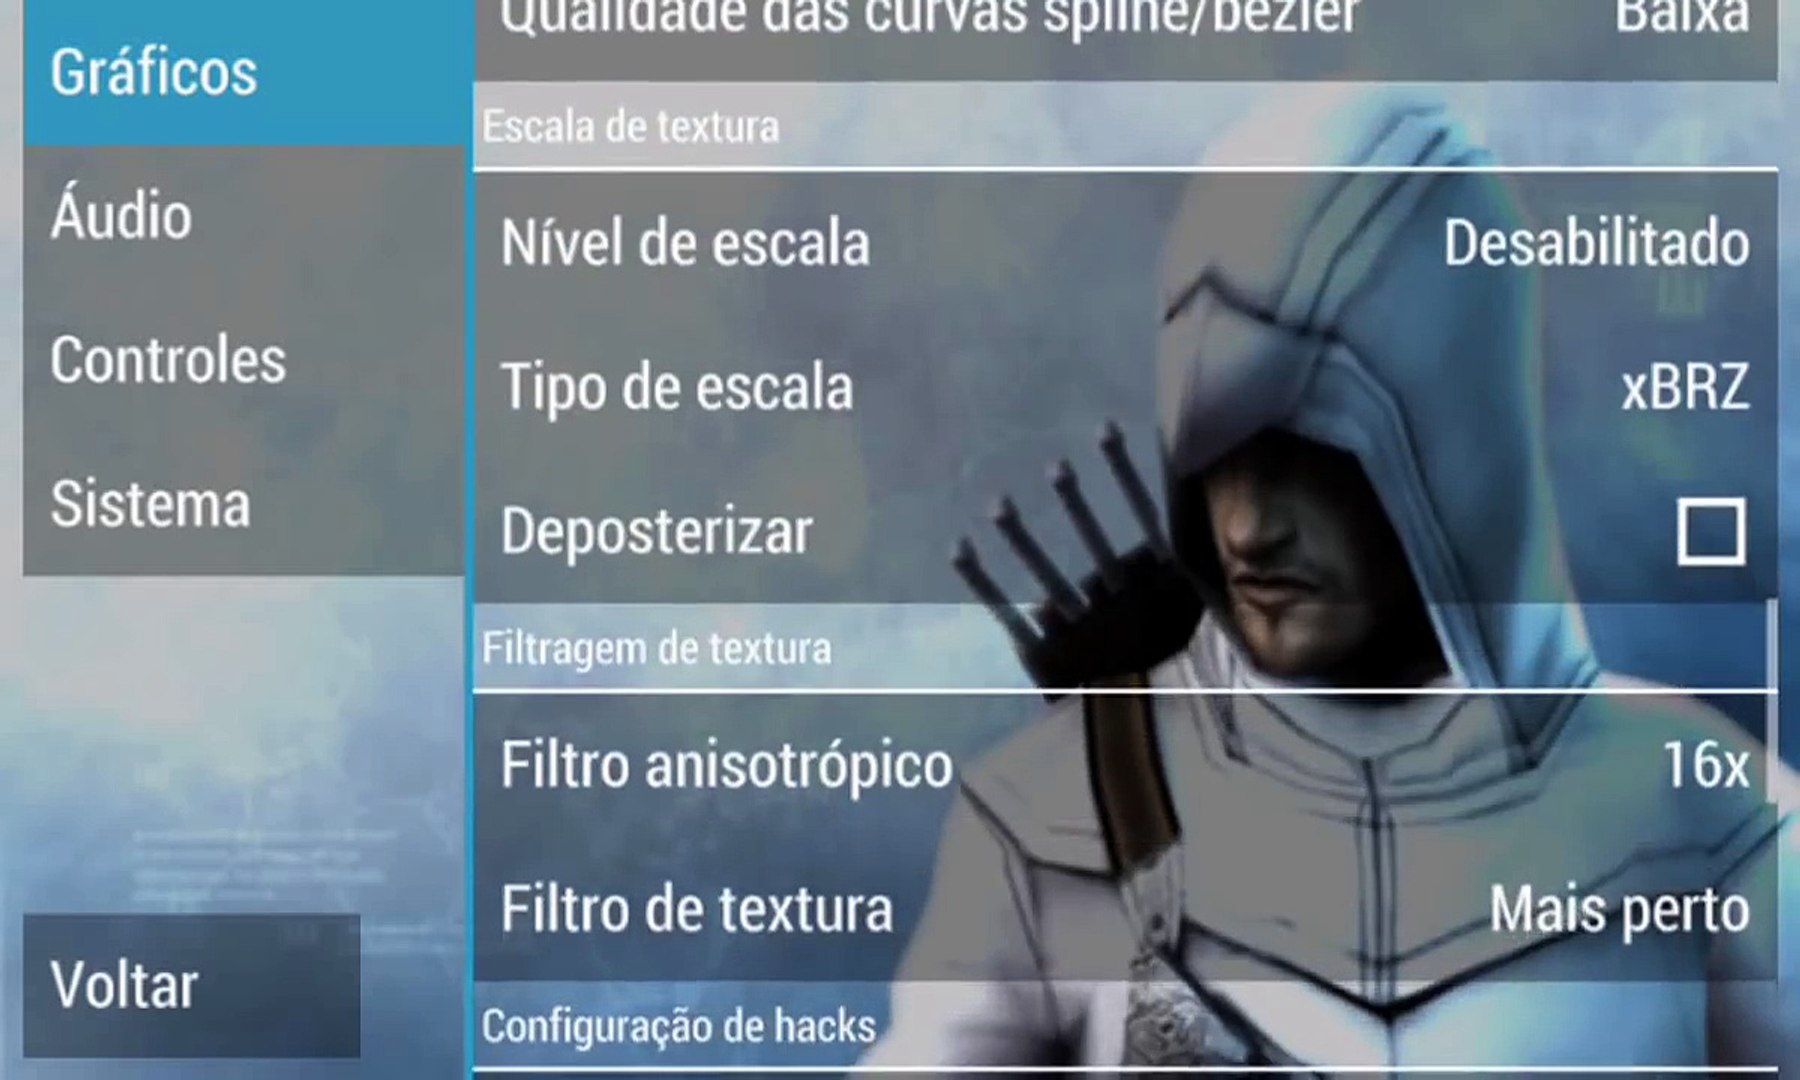 PPSSPP : Configuração para Assassins Creed Bloodlines - Android - Versão  0.9.9.1 – Видео Dailymotion